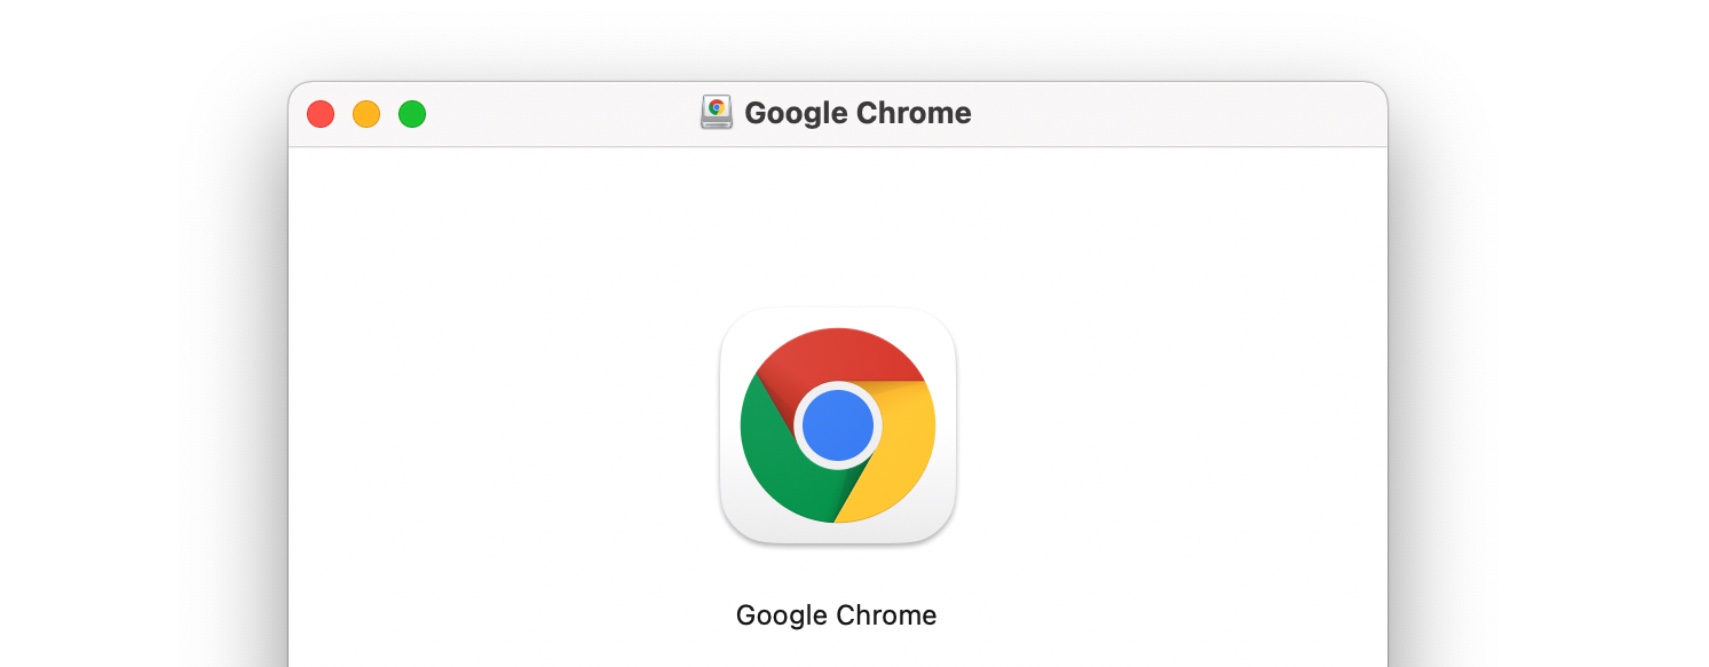 google chrome for mac m1